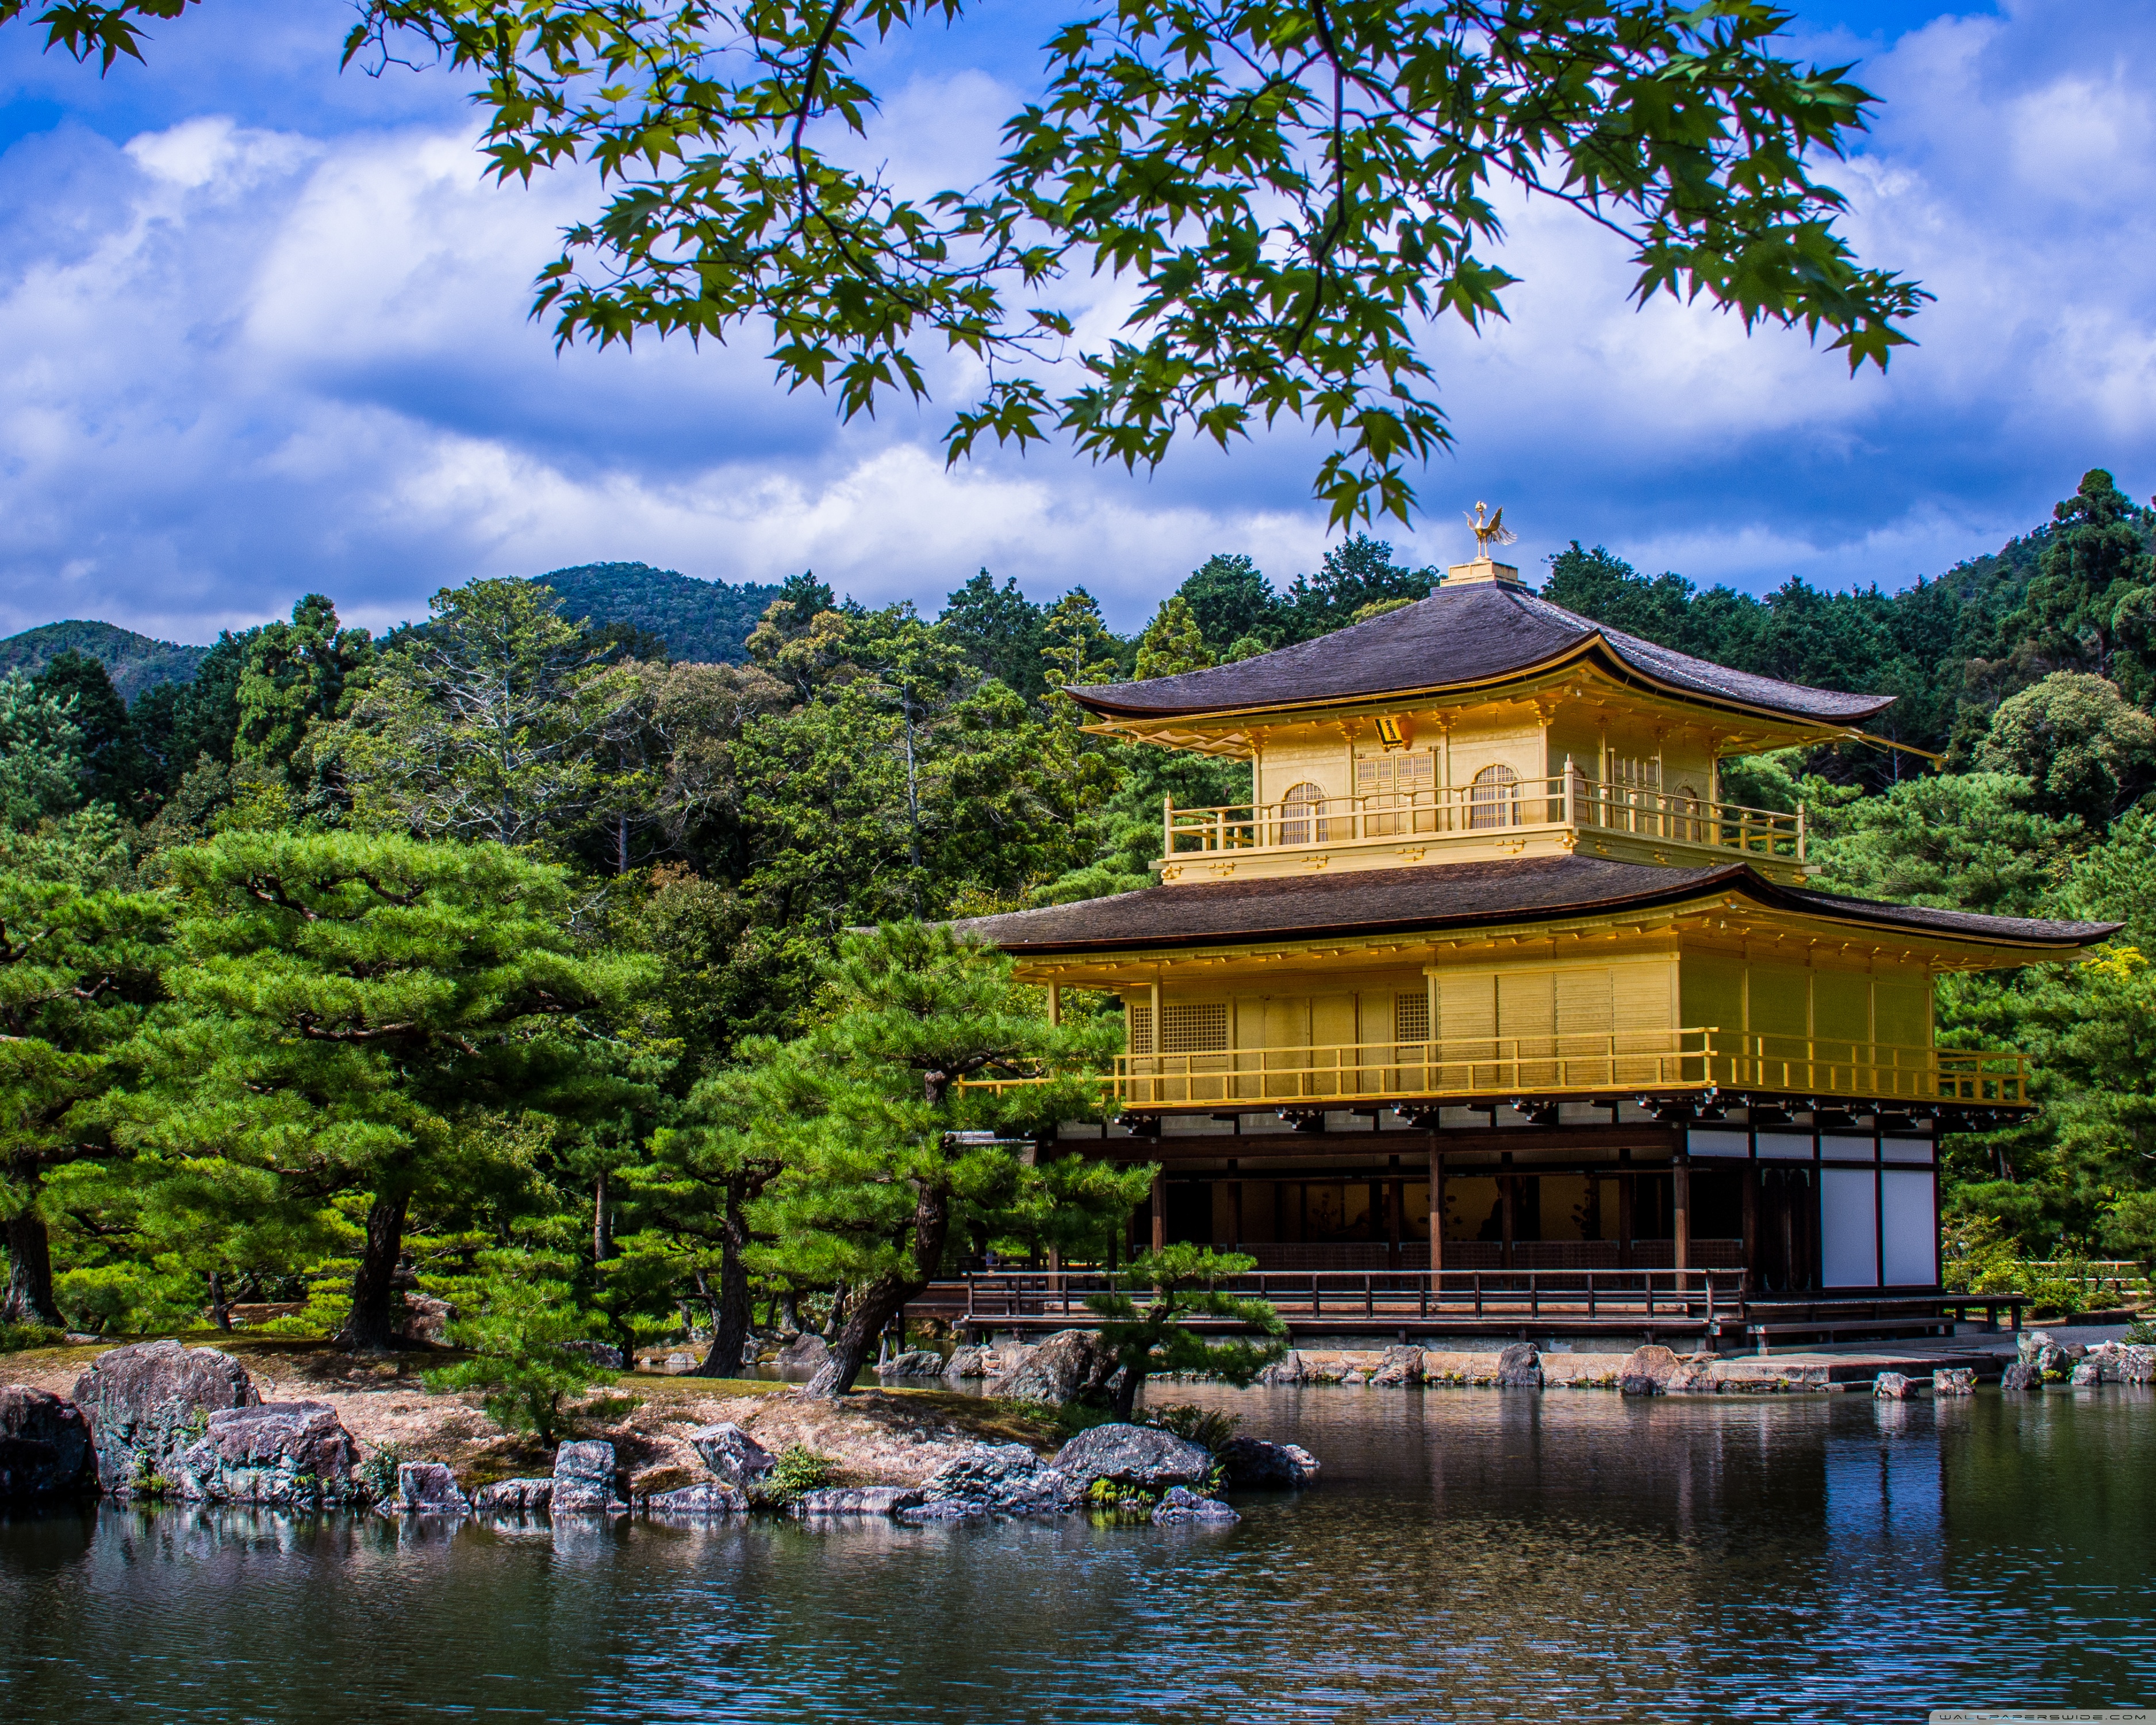 sfondo del tempio d'oro hd 1366x768,natura,paesaggio naturale,architettura cinese,architettura,architettura giapponese